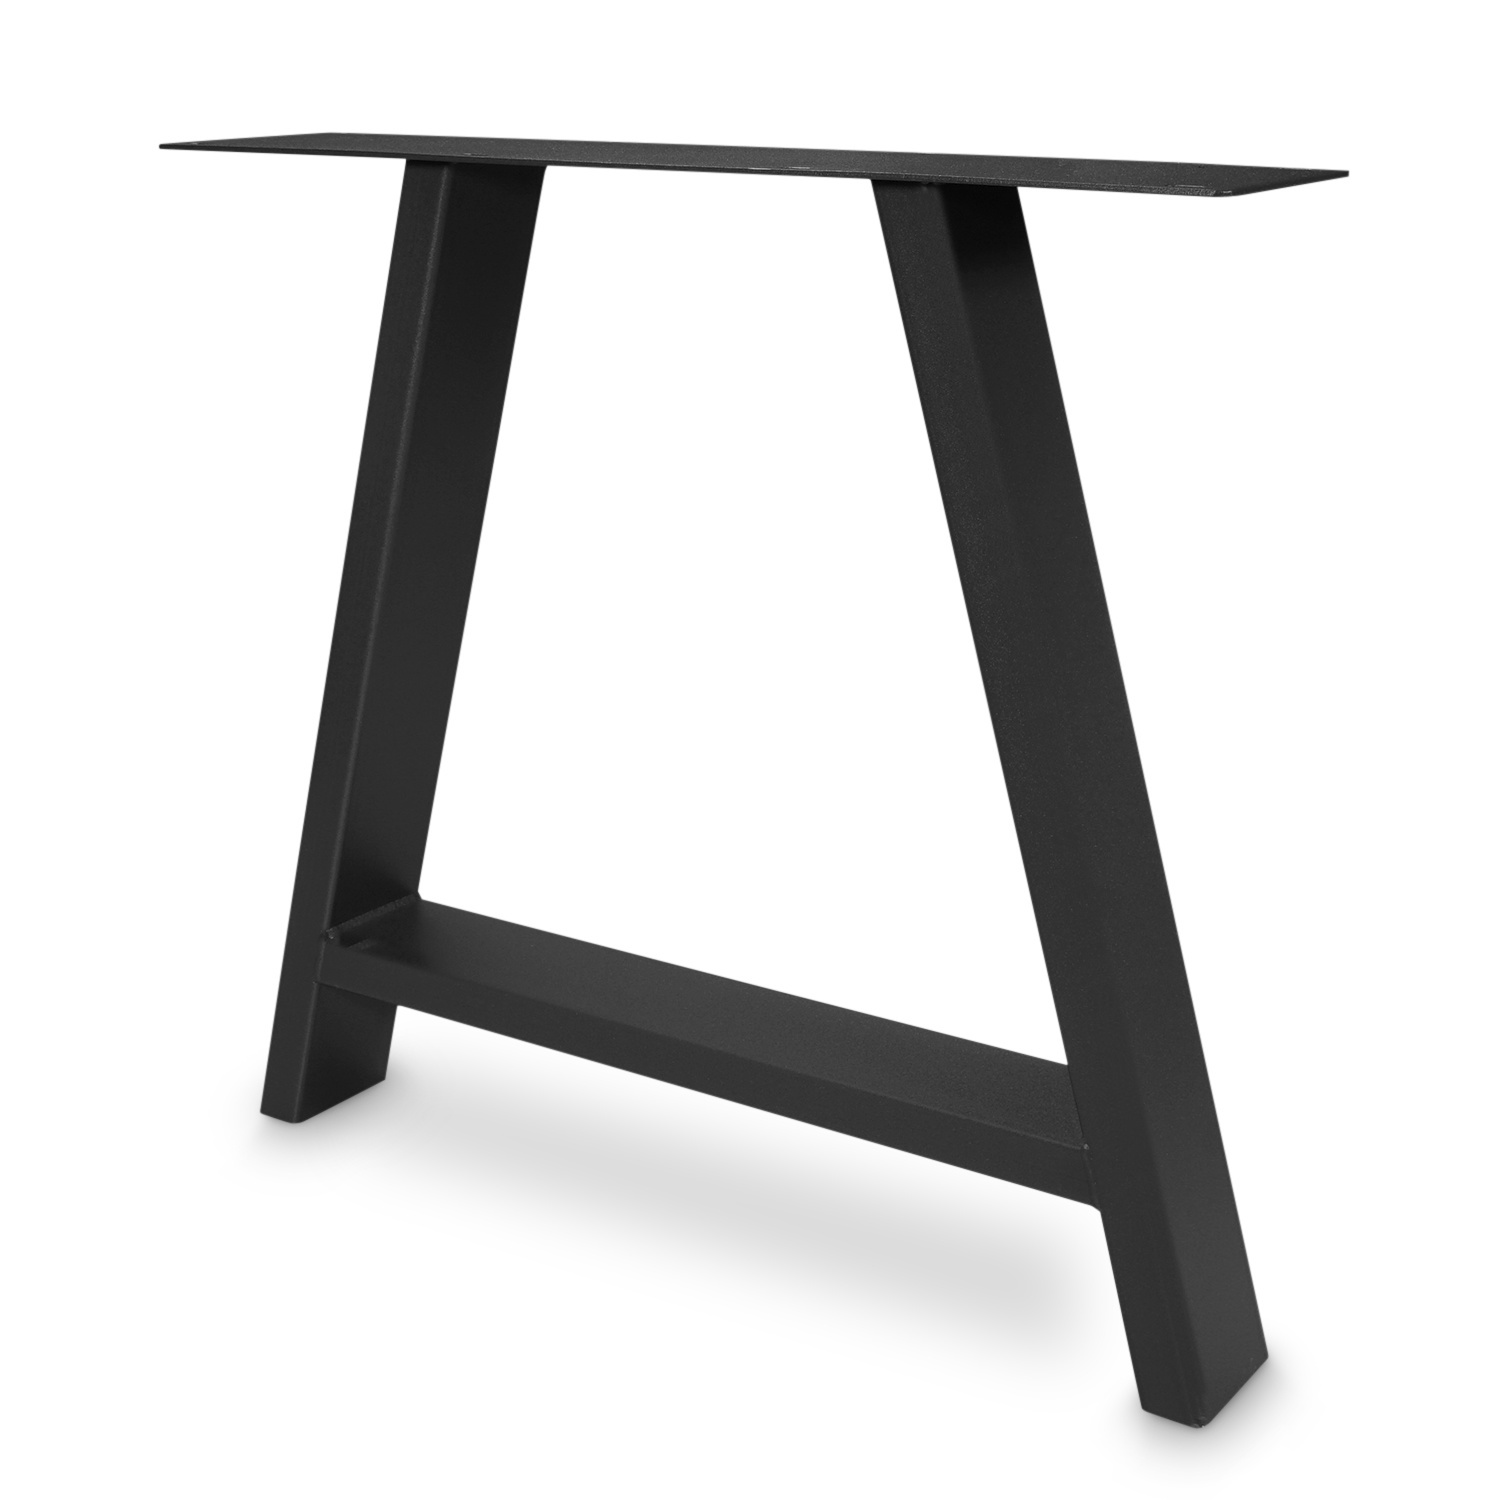  Tischbeine A Metall elegant SET (2 Stück) - 10x4 cm - 78 cm breit - 72 cm hoch - A-form Tischkufen / Tischgestell beschichtet - Schwarz, Anthrazit & Weiß